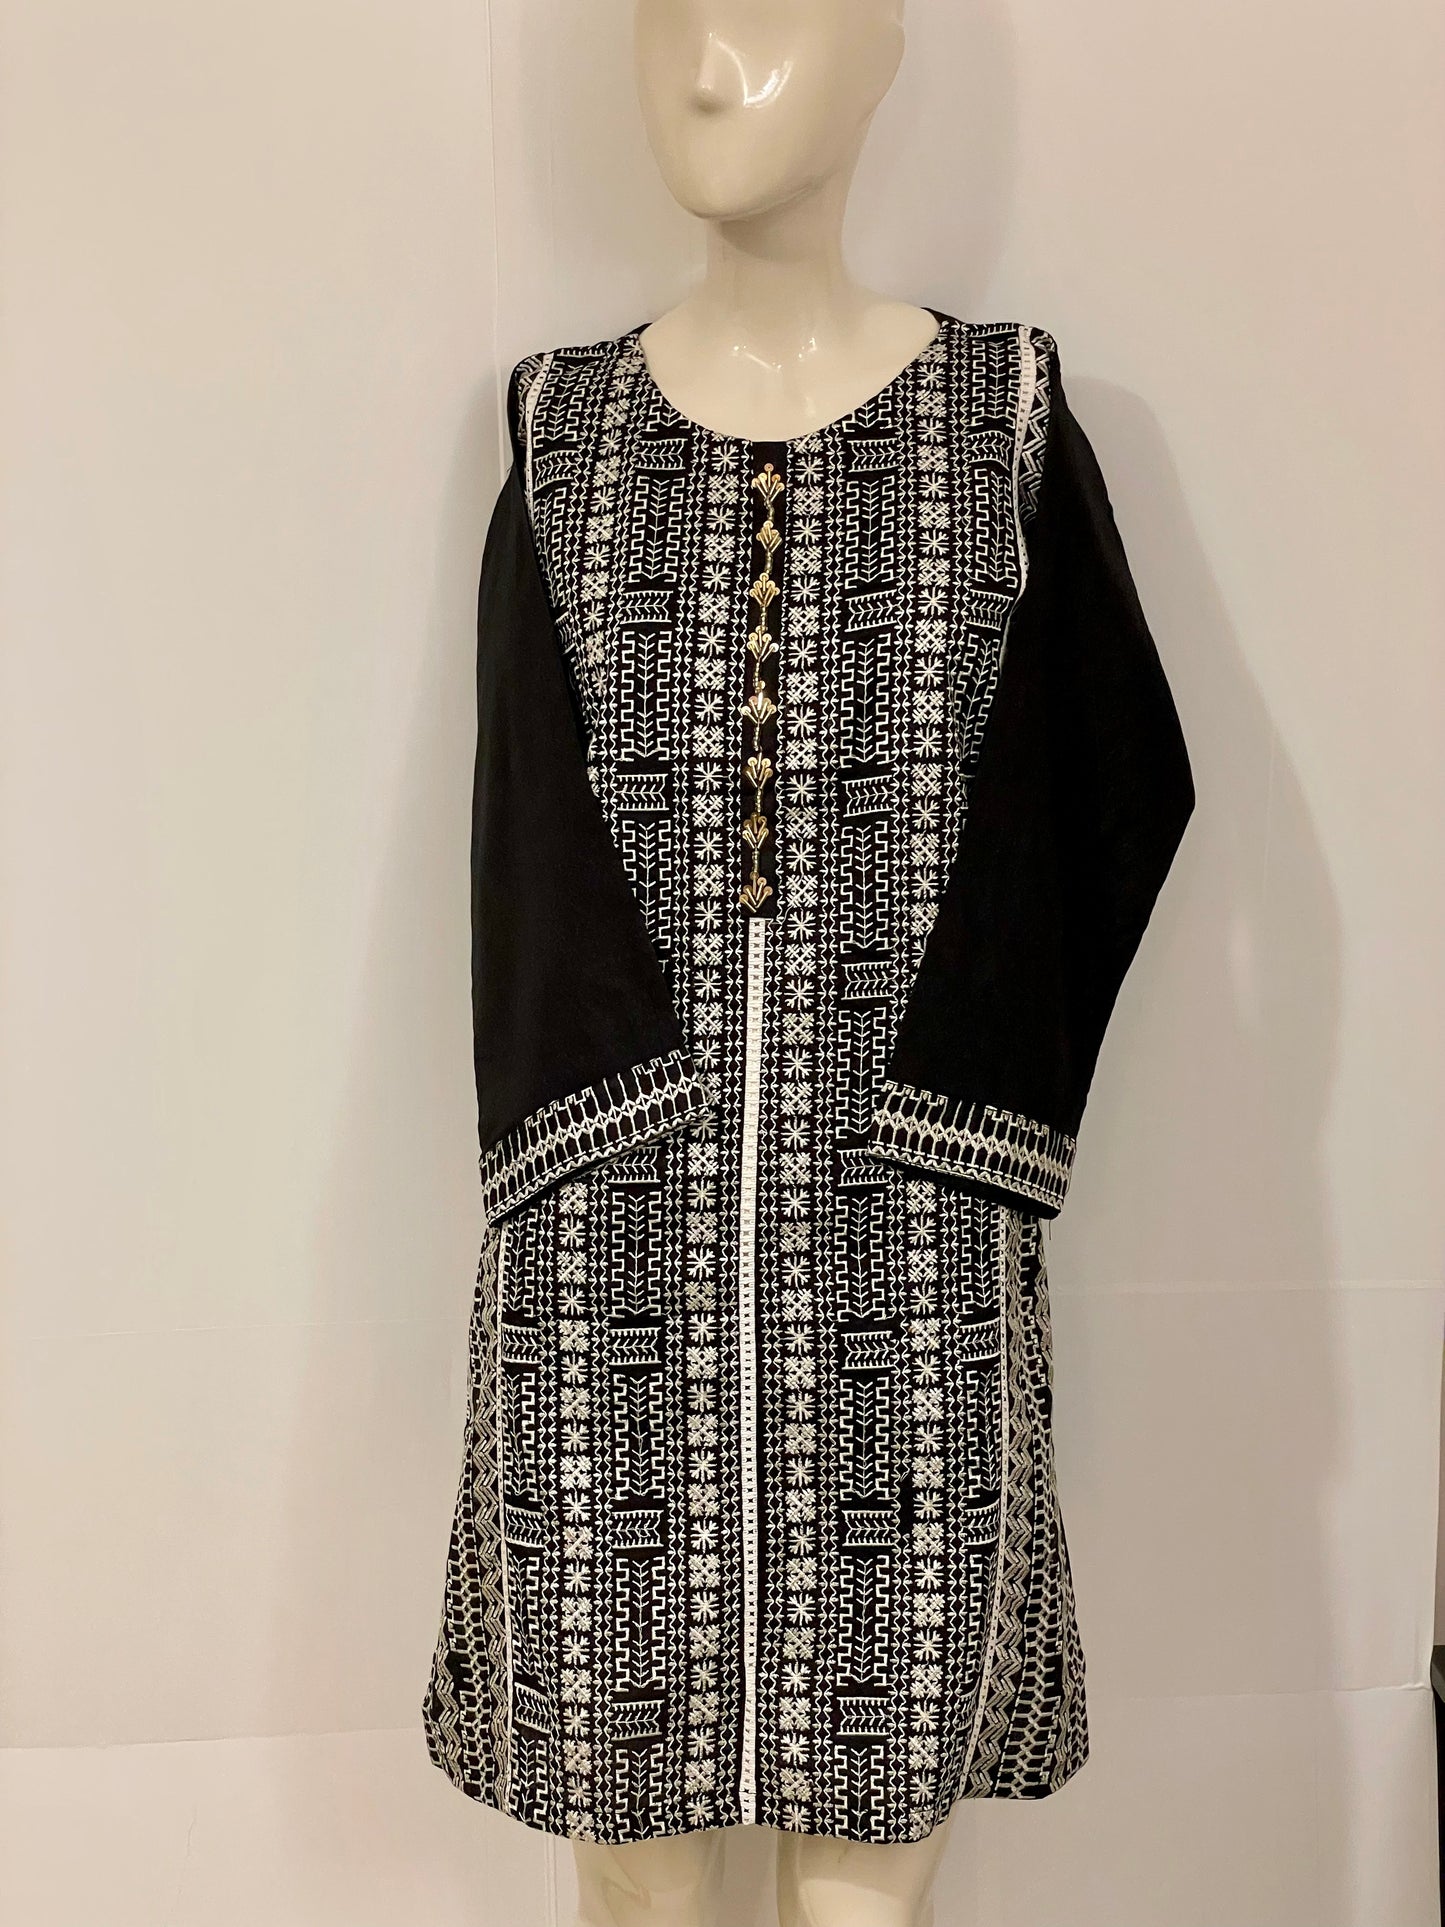 Pakistani Indian Embroidered Sequins Kurta Cotton Top Dress Kameez Shirt